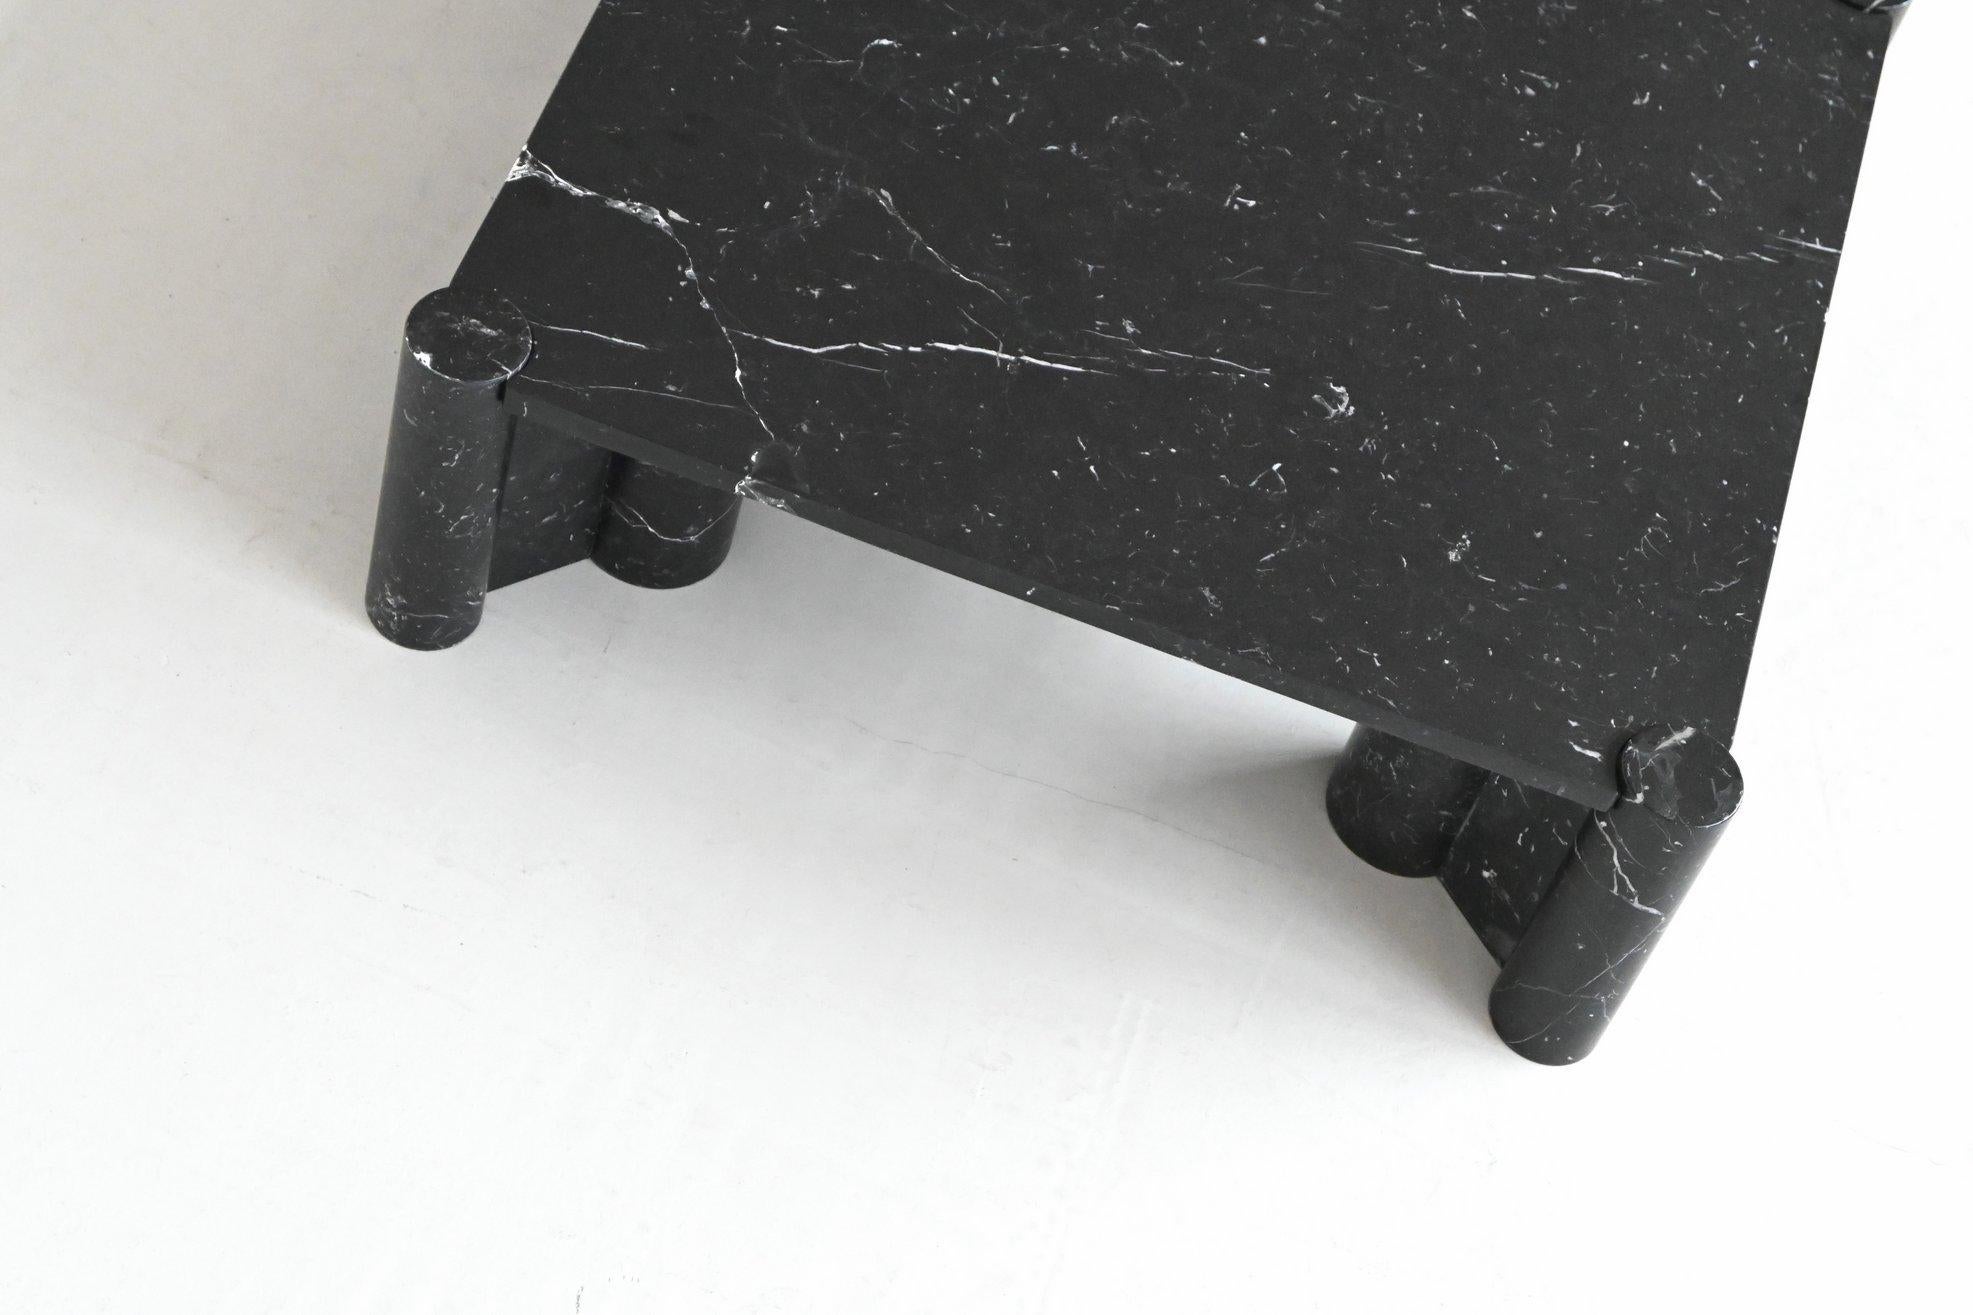 Gae Aulenti Jumbo coffee table black marble Knoll International Italy 1965 For Sale 4